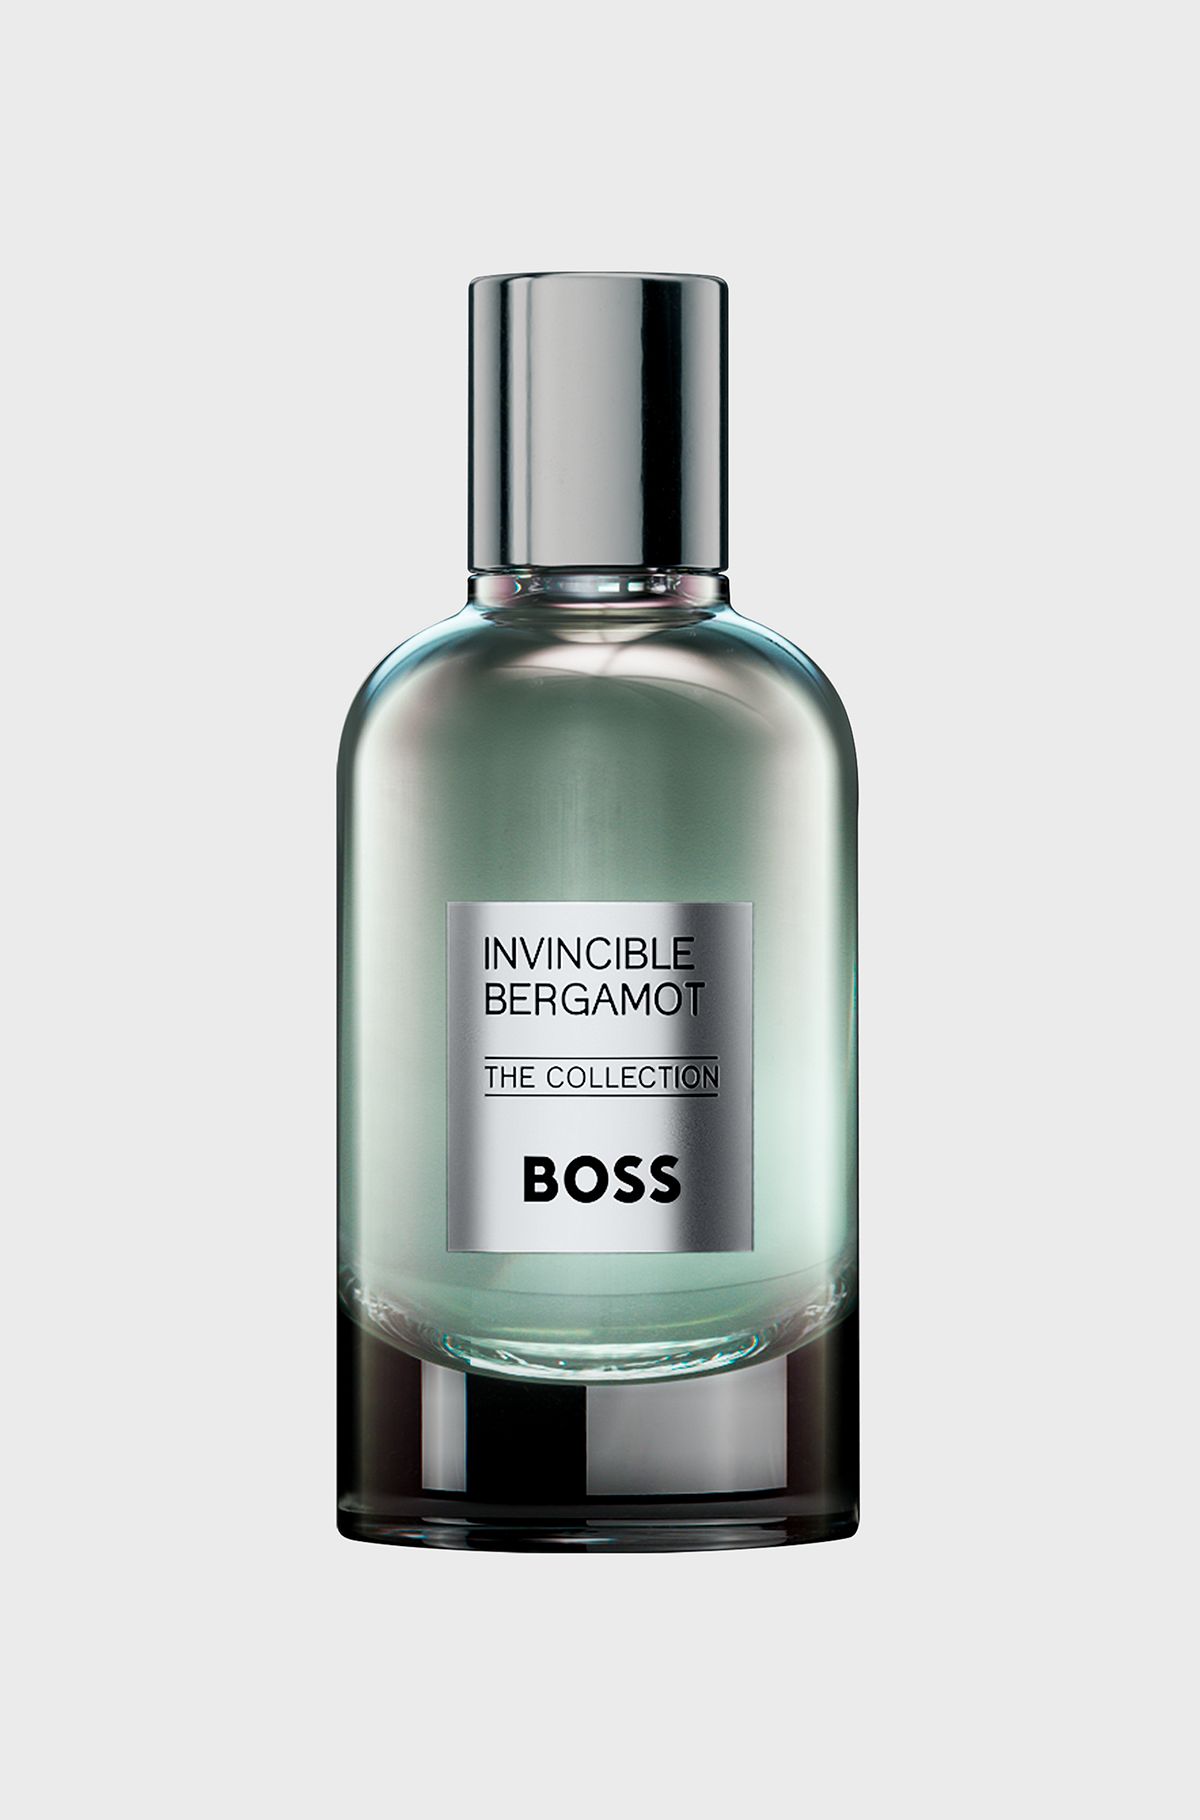 BOSS The Collection Invincible Bergamot eau de parfum 100ml, Assorted-Pre-Pack